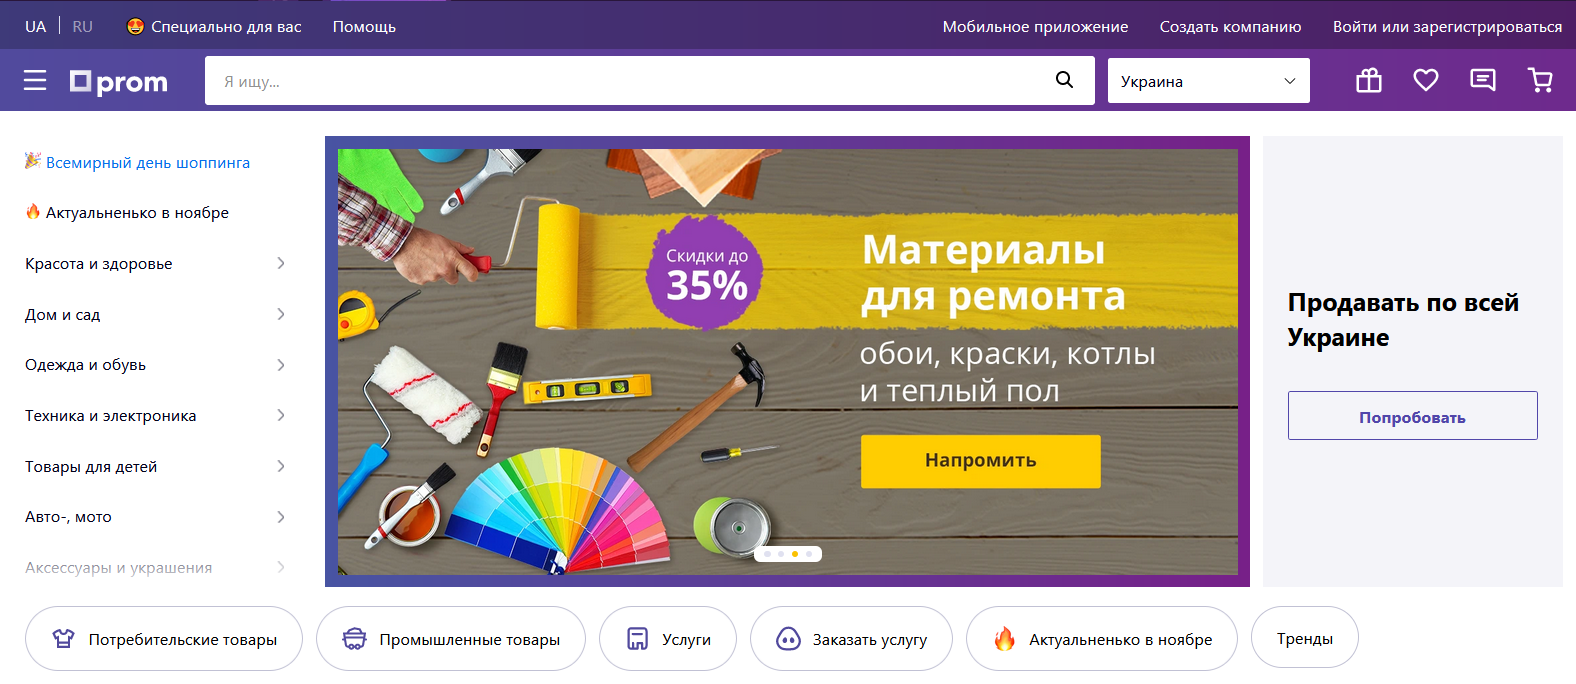 Как создать прибыльный интернет-магазин на Prom.ua